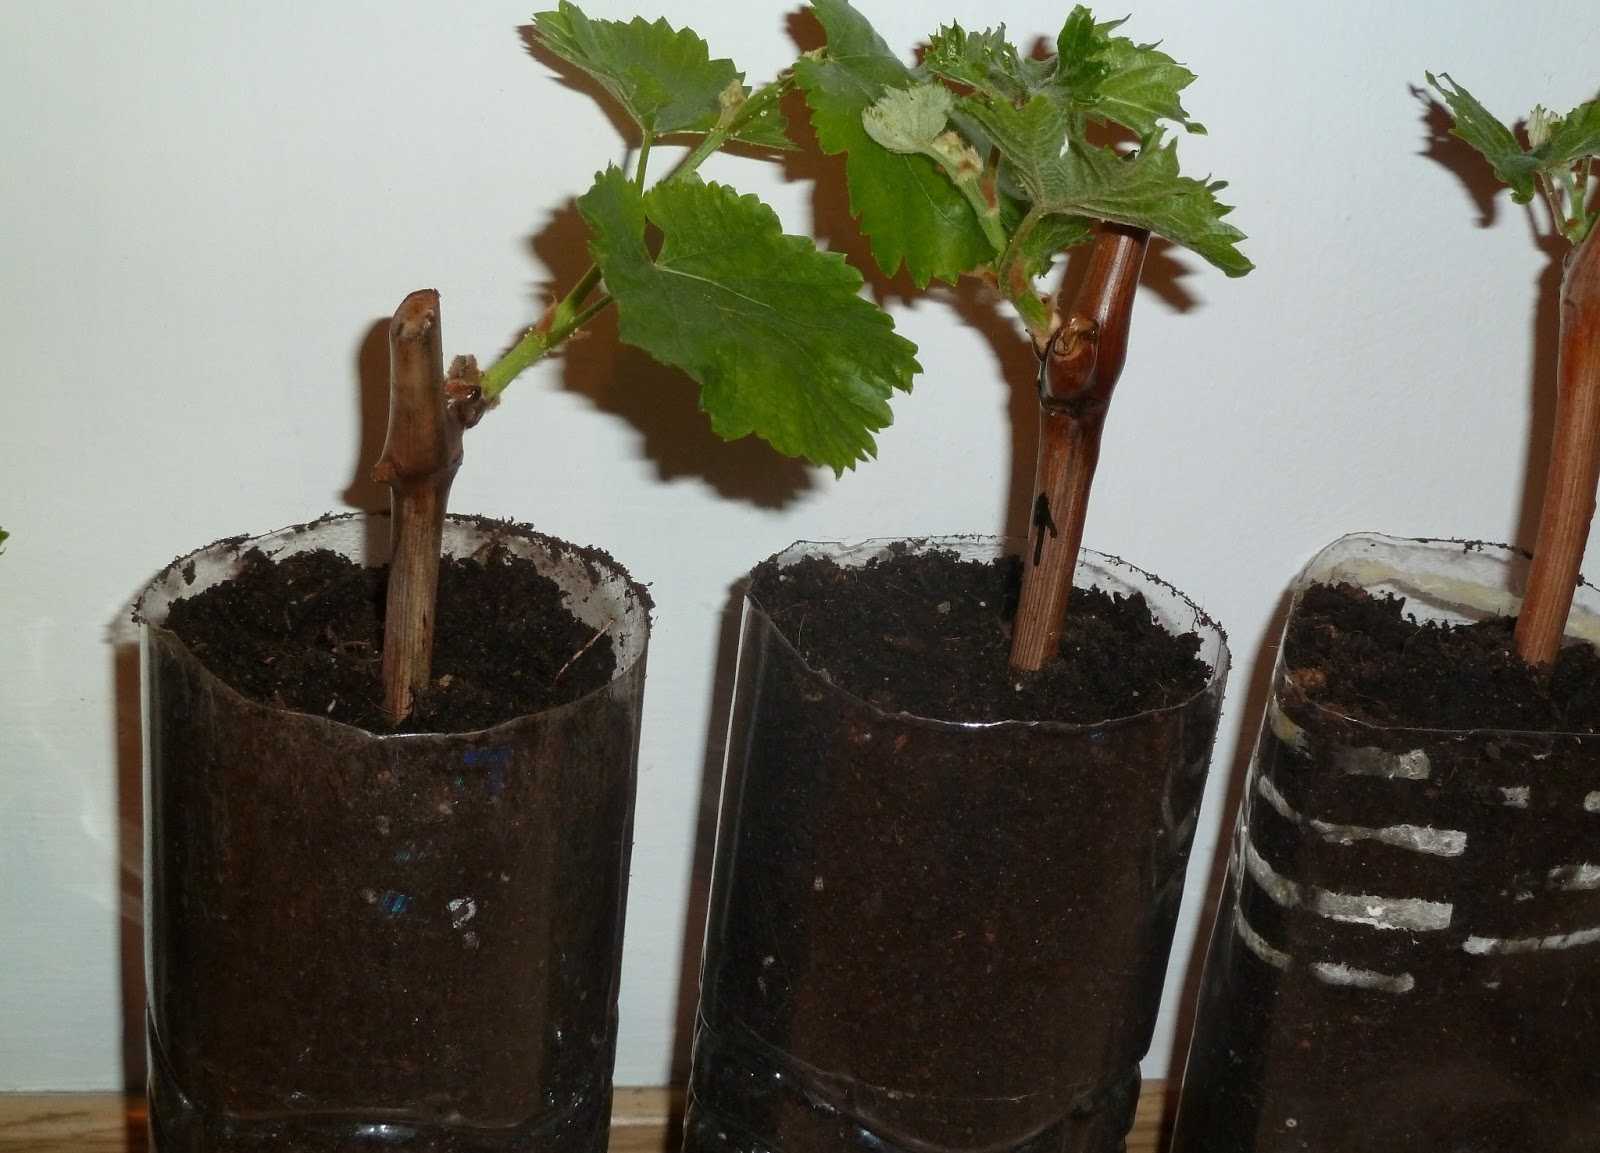 Как сохранить виноград до посадки